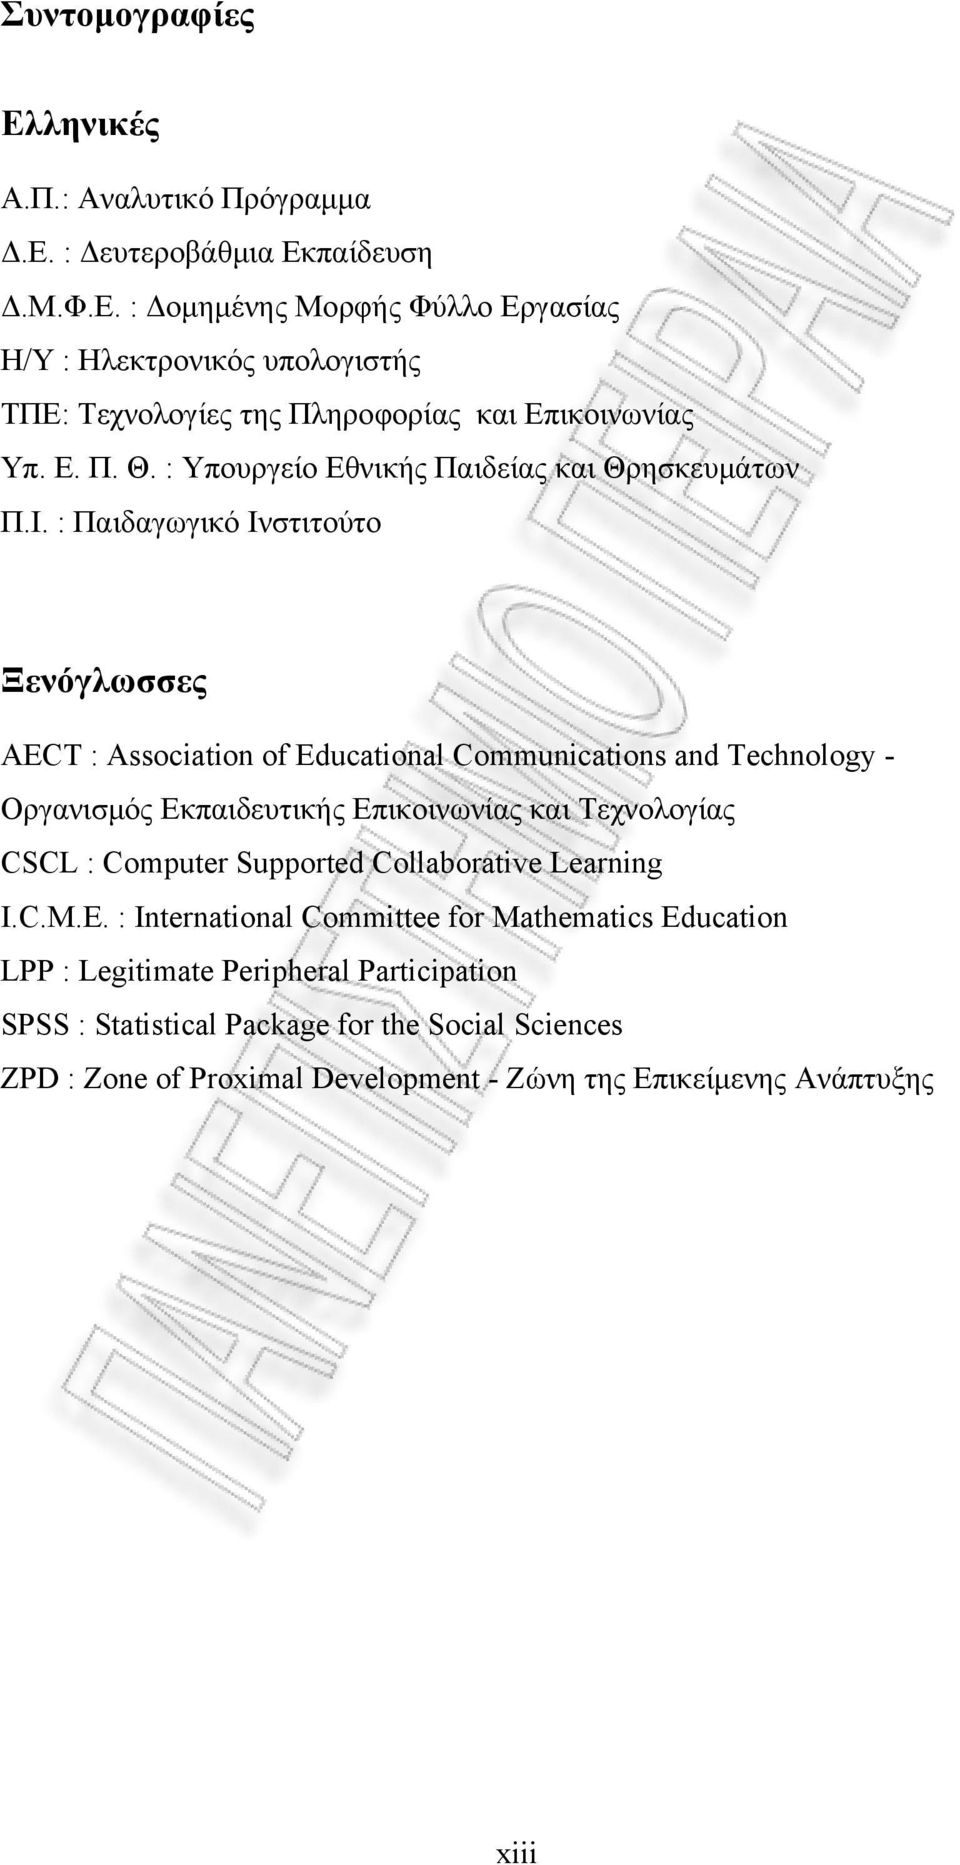 : Παιδαγωγικό Ινστιτούτο Ξενόγλωσσες AECT : Association of Educational Communications and Technology - Οργανισμός Εκπαιδευτικής Επικοινωνίας και Τεχνολογίας CSCL : Computer